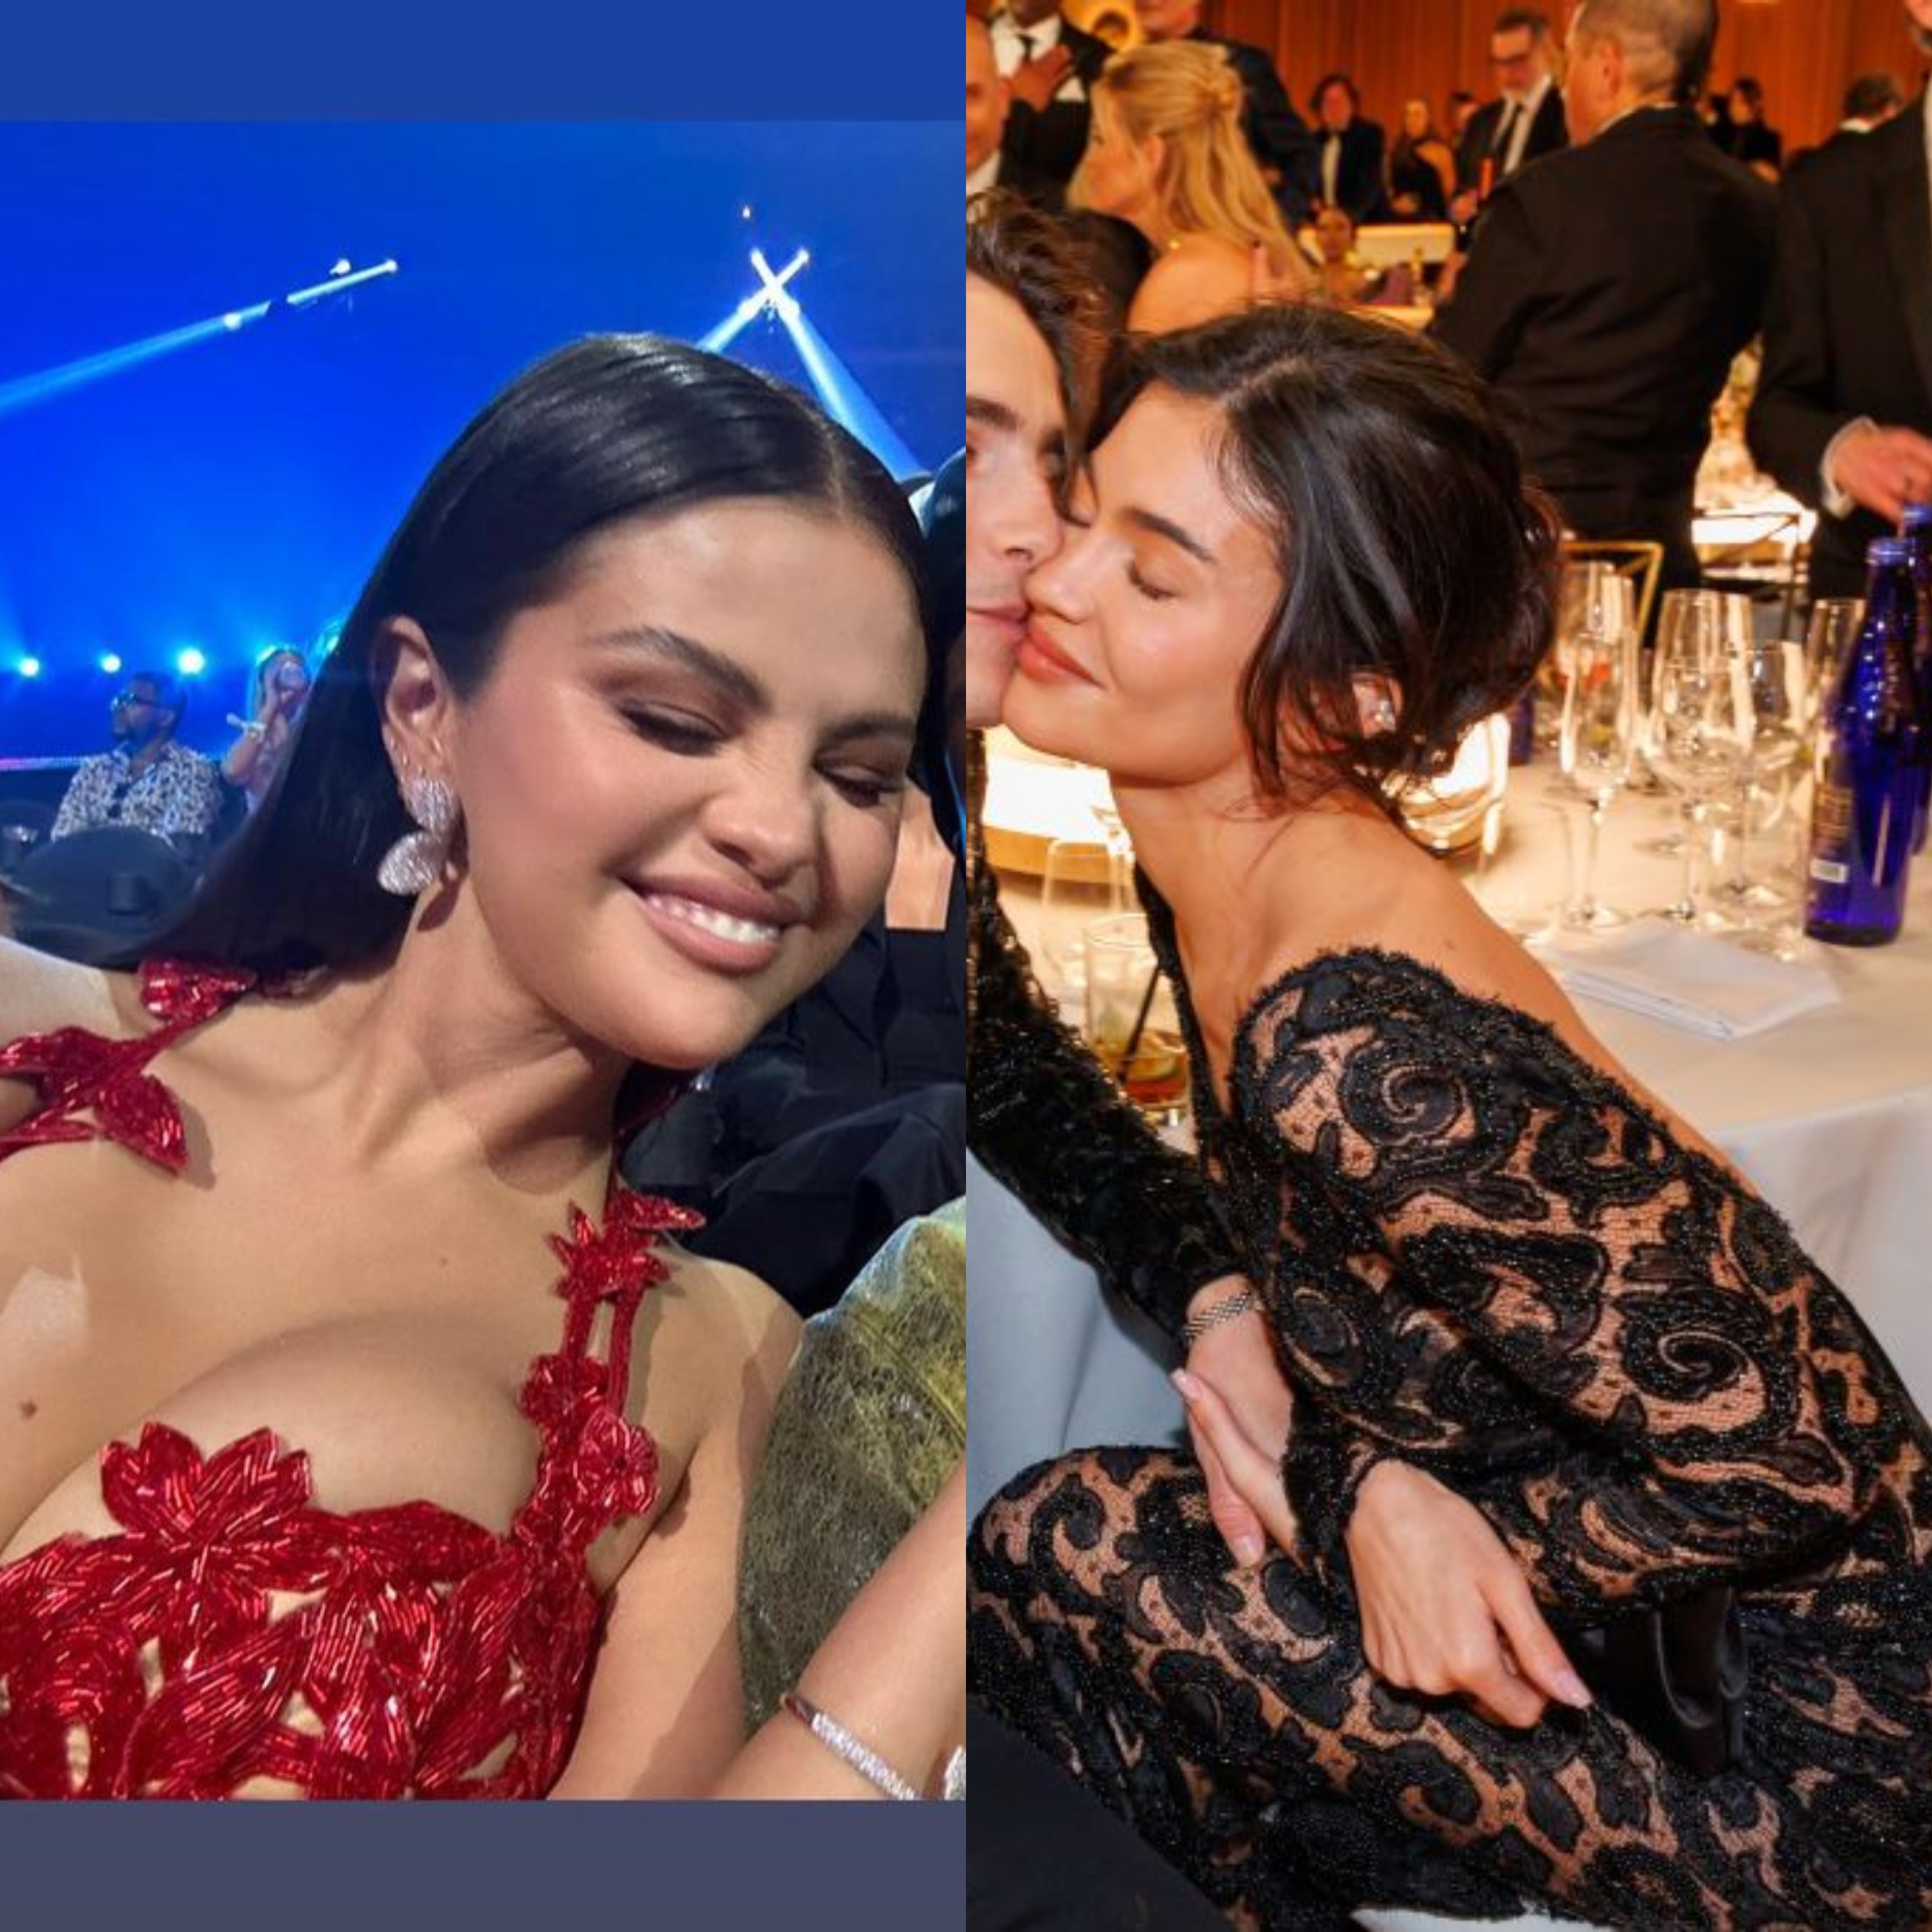 Guerra de divas: Selena Gomez y el clan Kardashian enfrentadas por un chico en los Globos de Oro